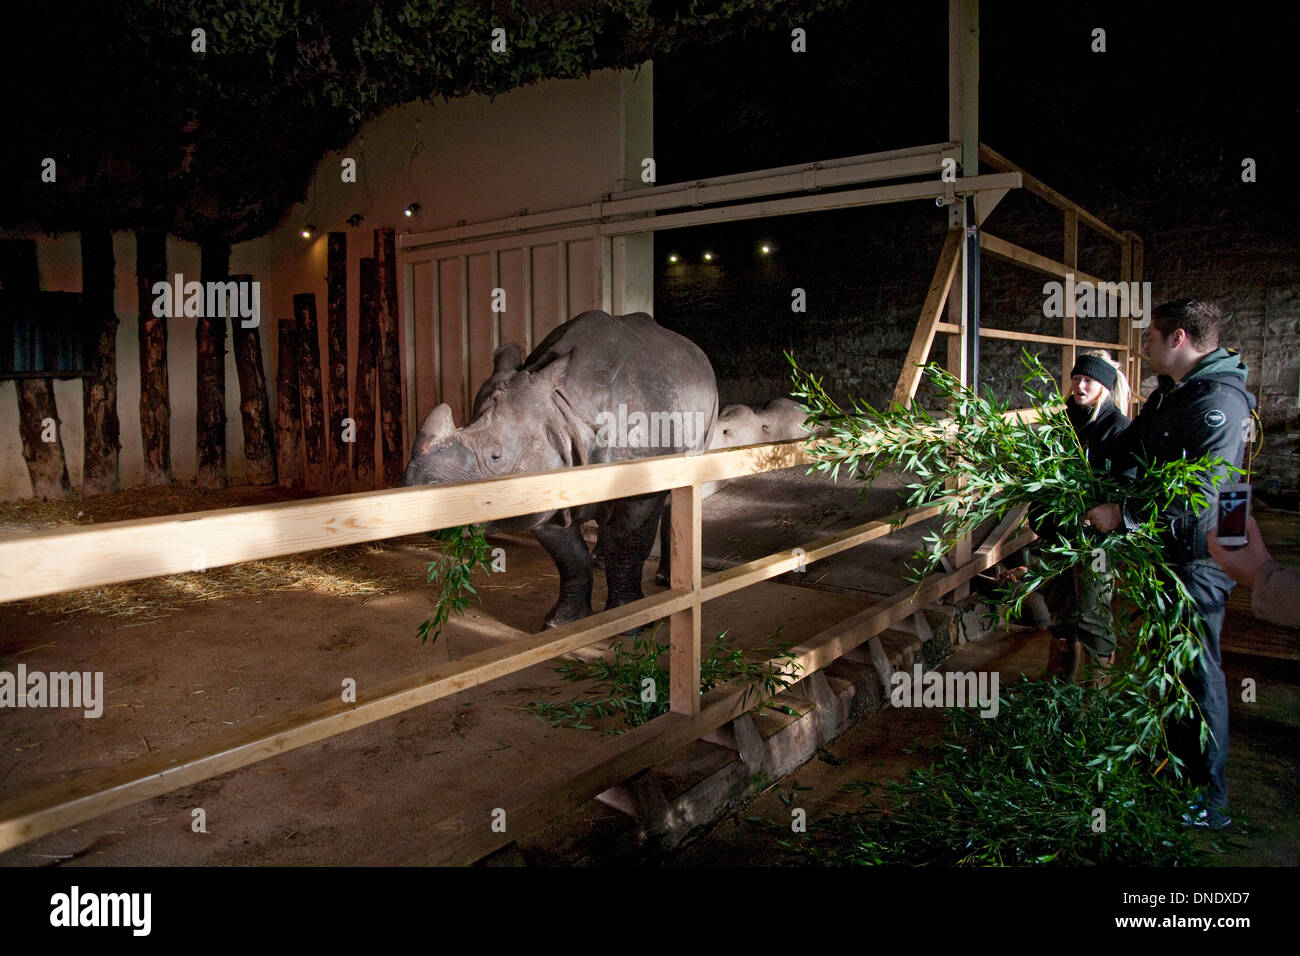 Les gardiens de zoo nourrir à un rhinocéros indien bumcrew Banque D'Images